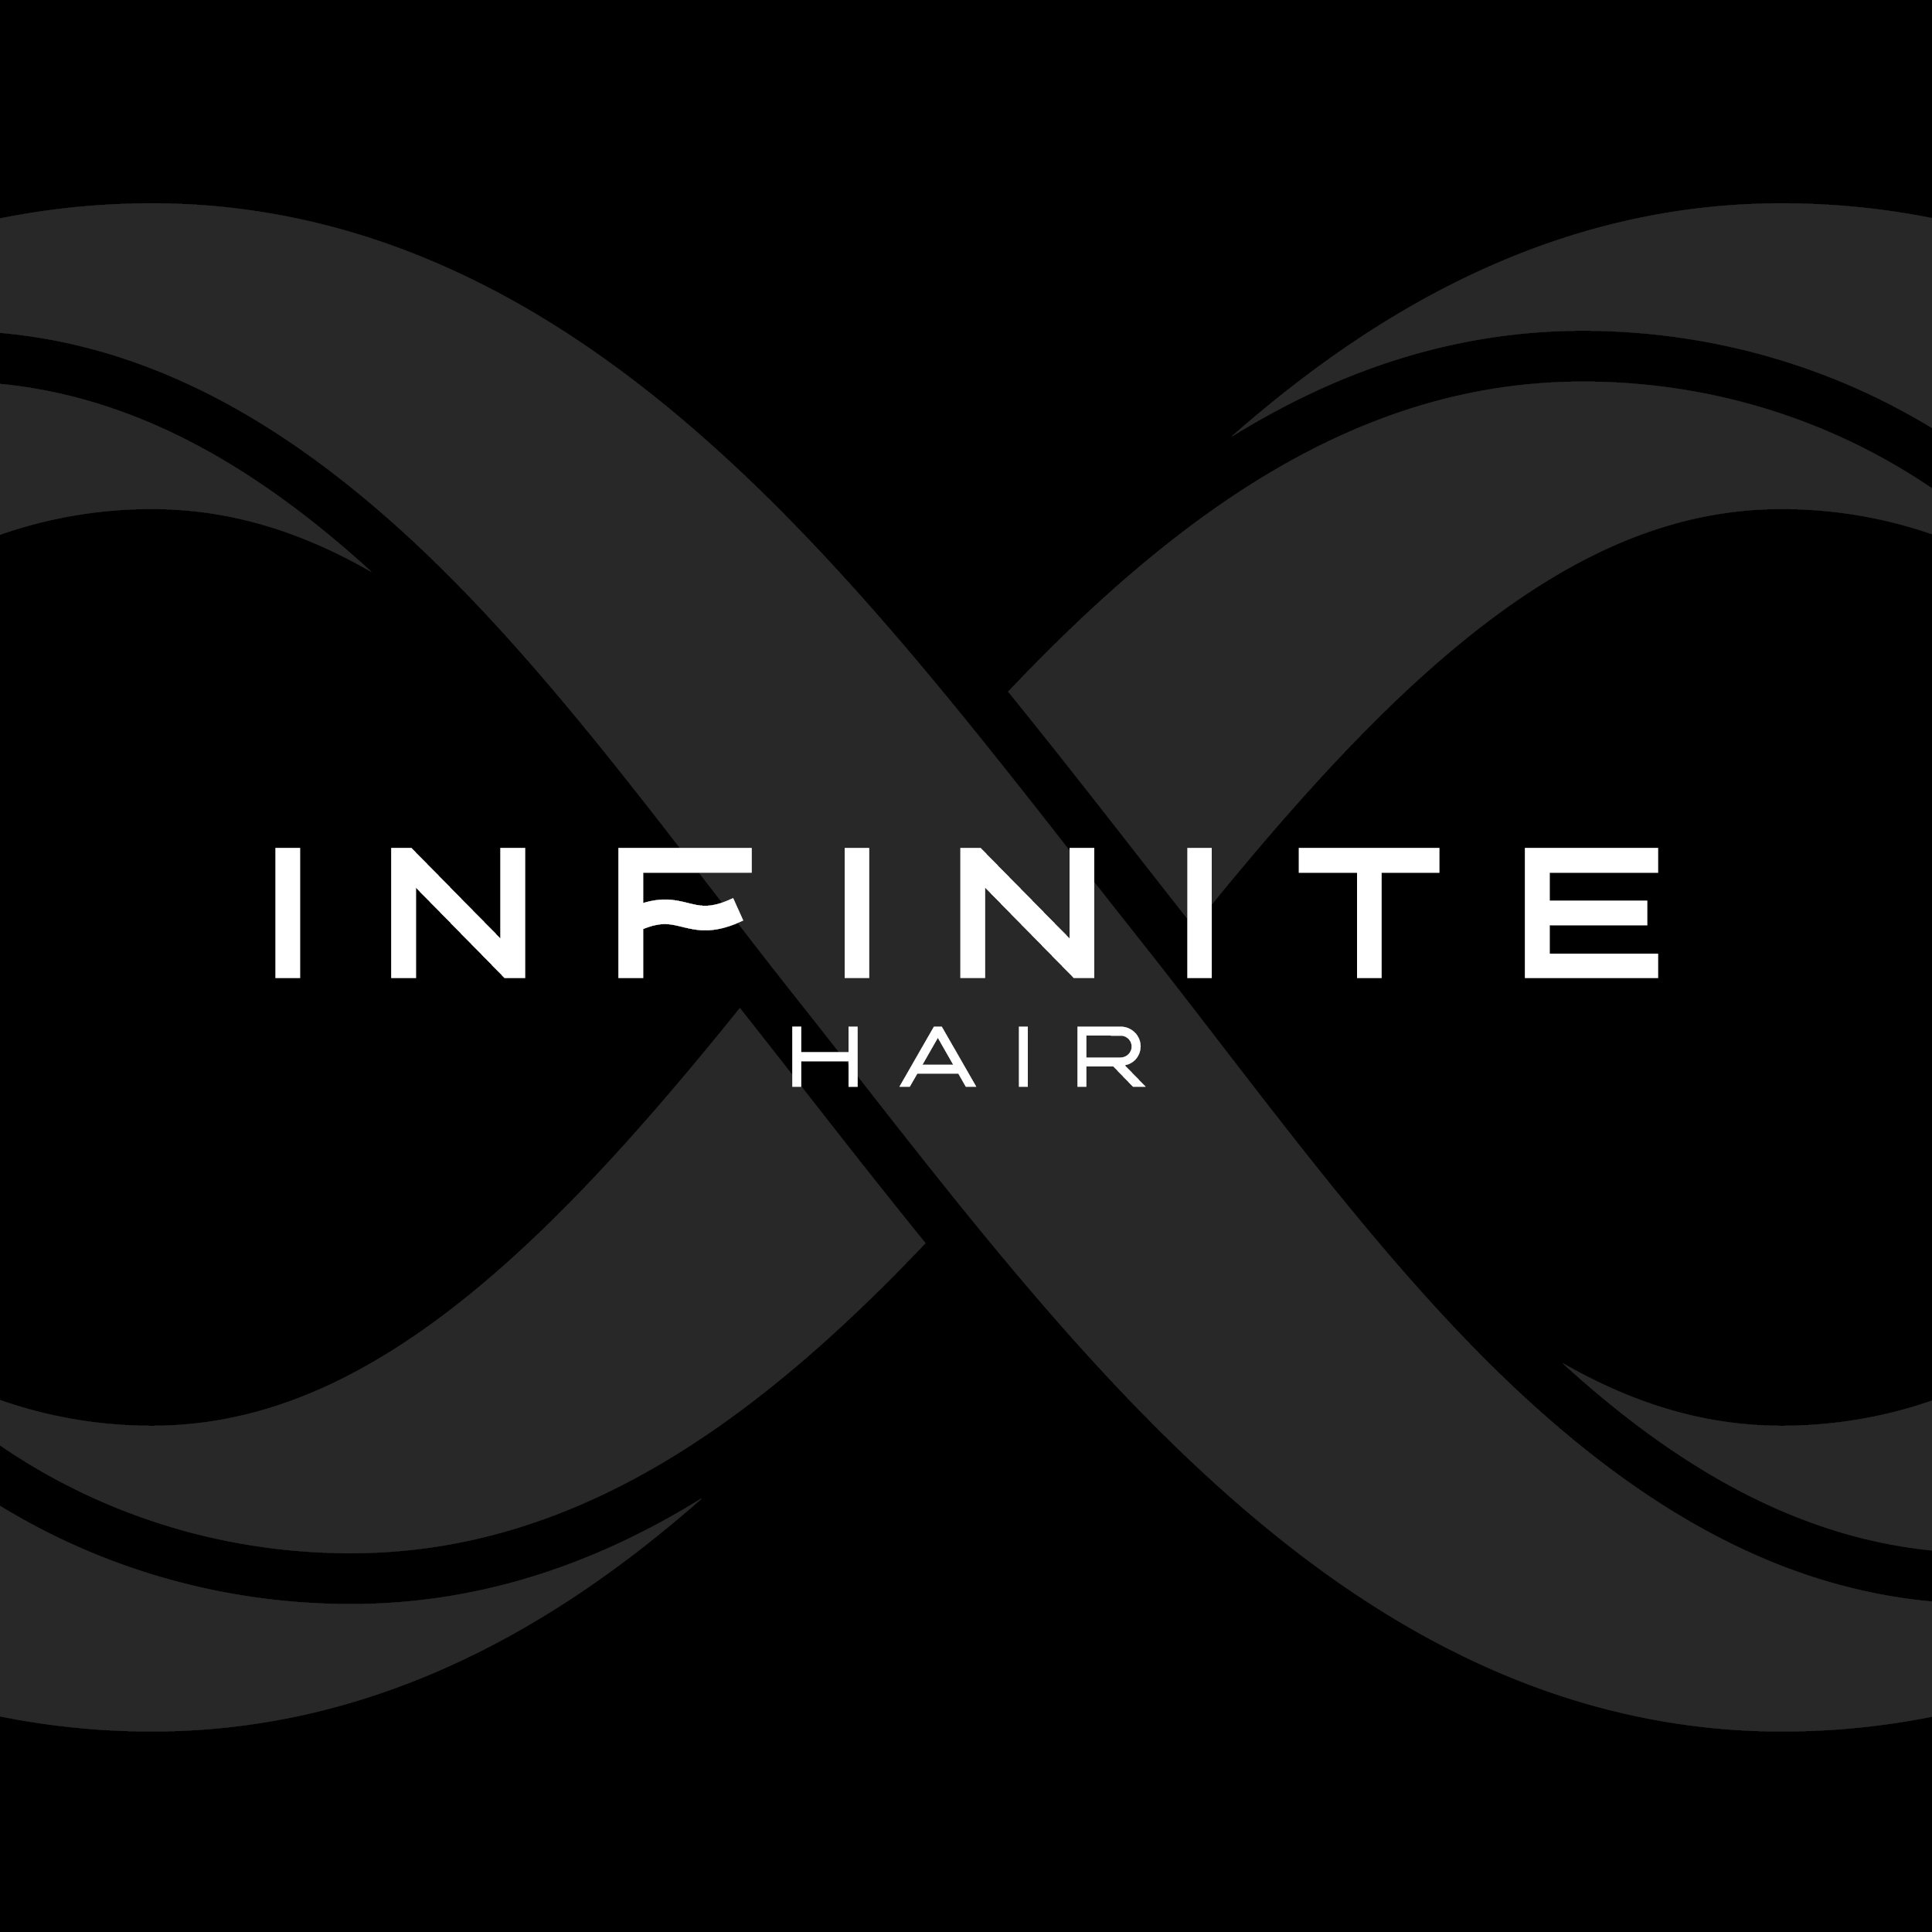 Infinite Hair - Social (logo) 2.jpg